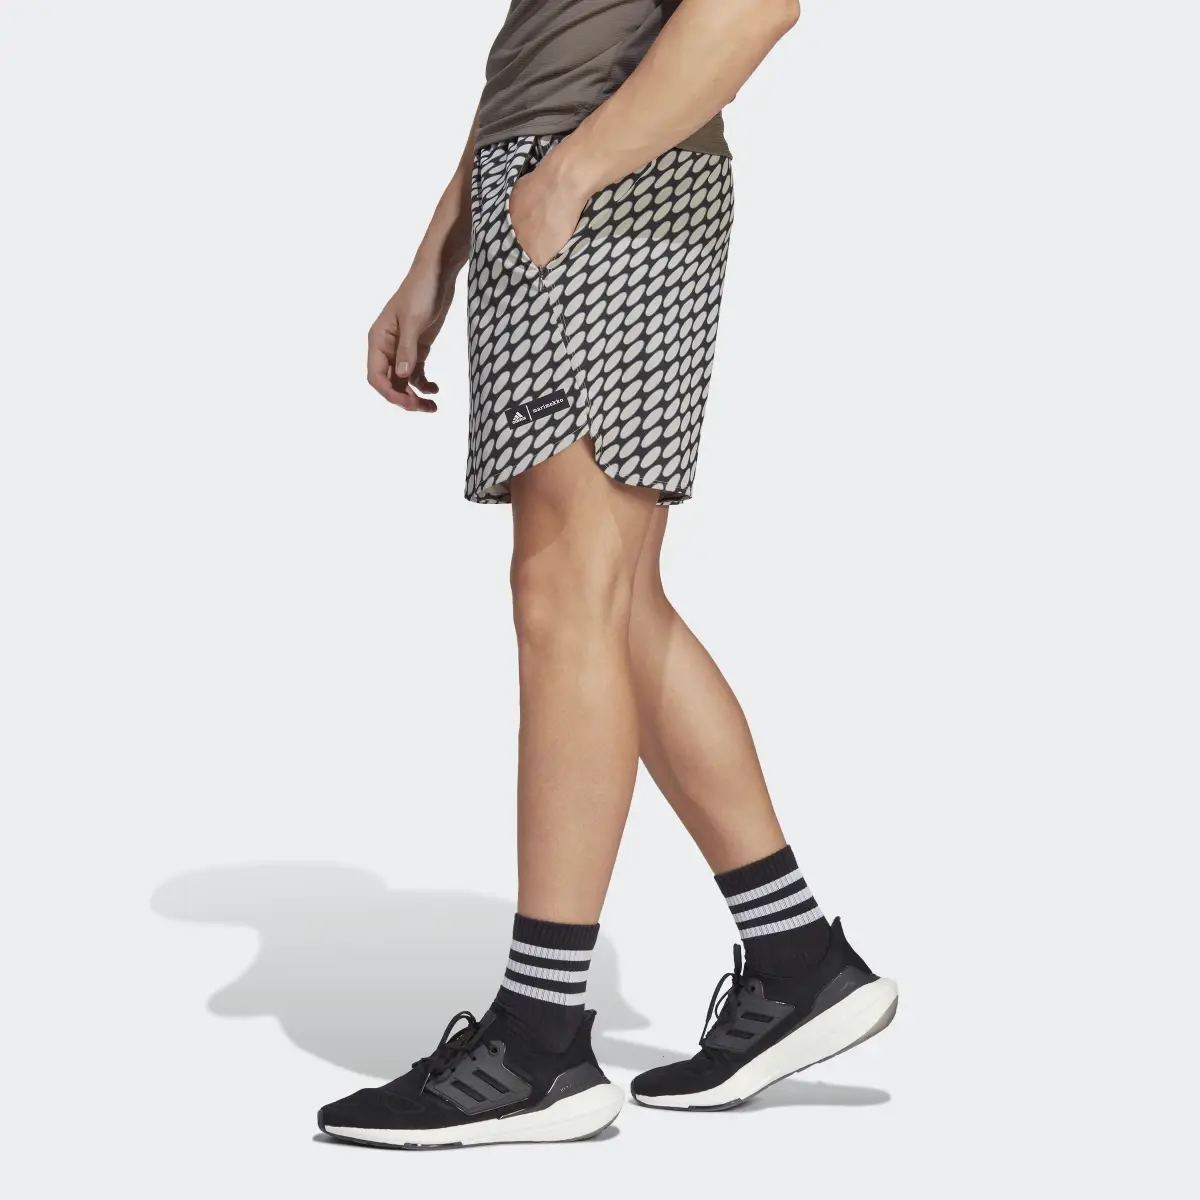 Adidas x Marimekko Designed for Training Shorts. 2